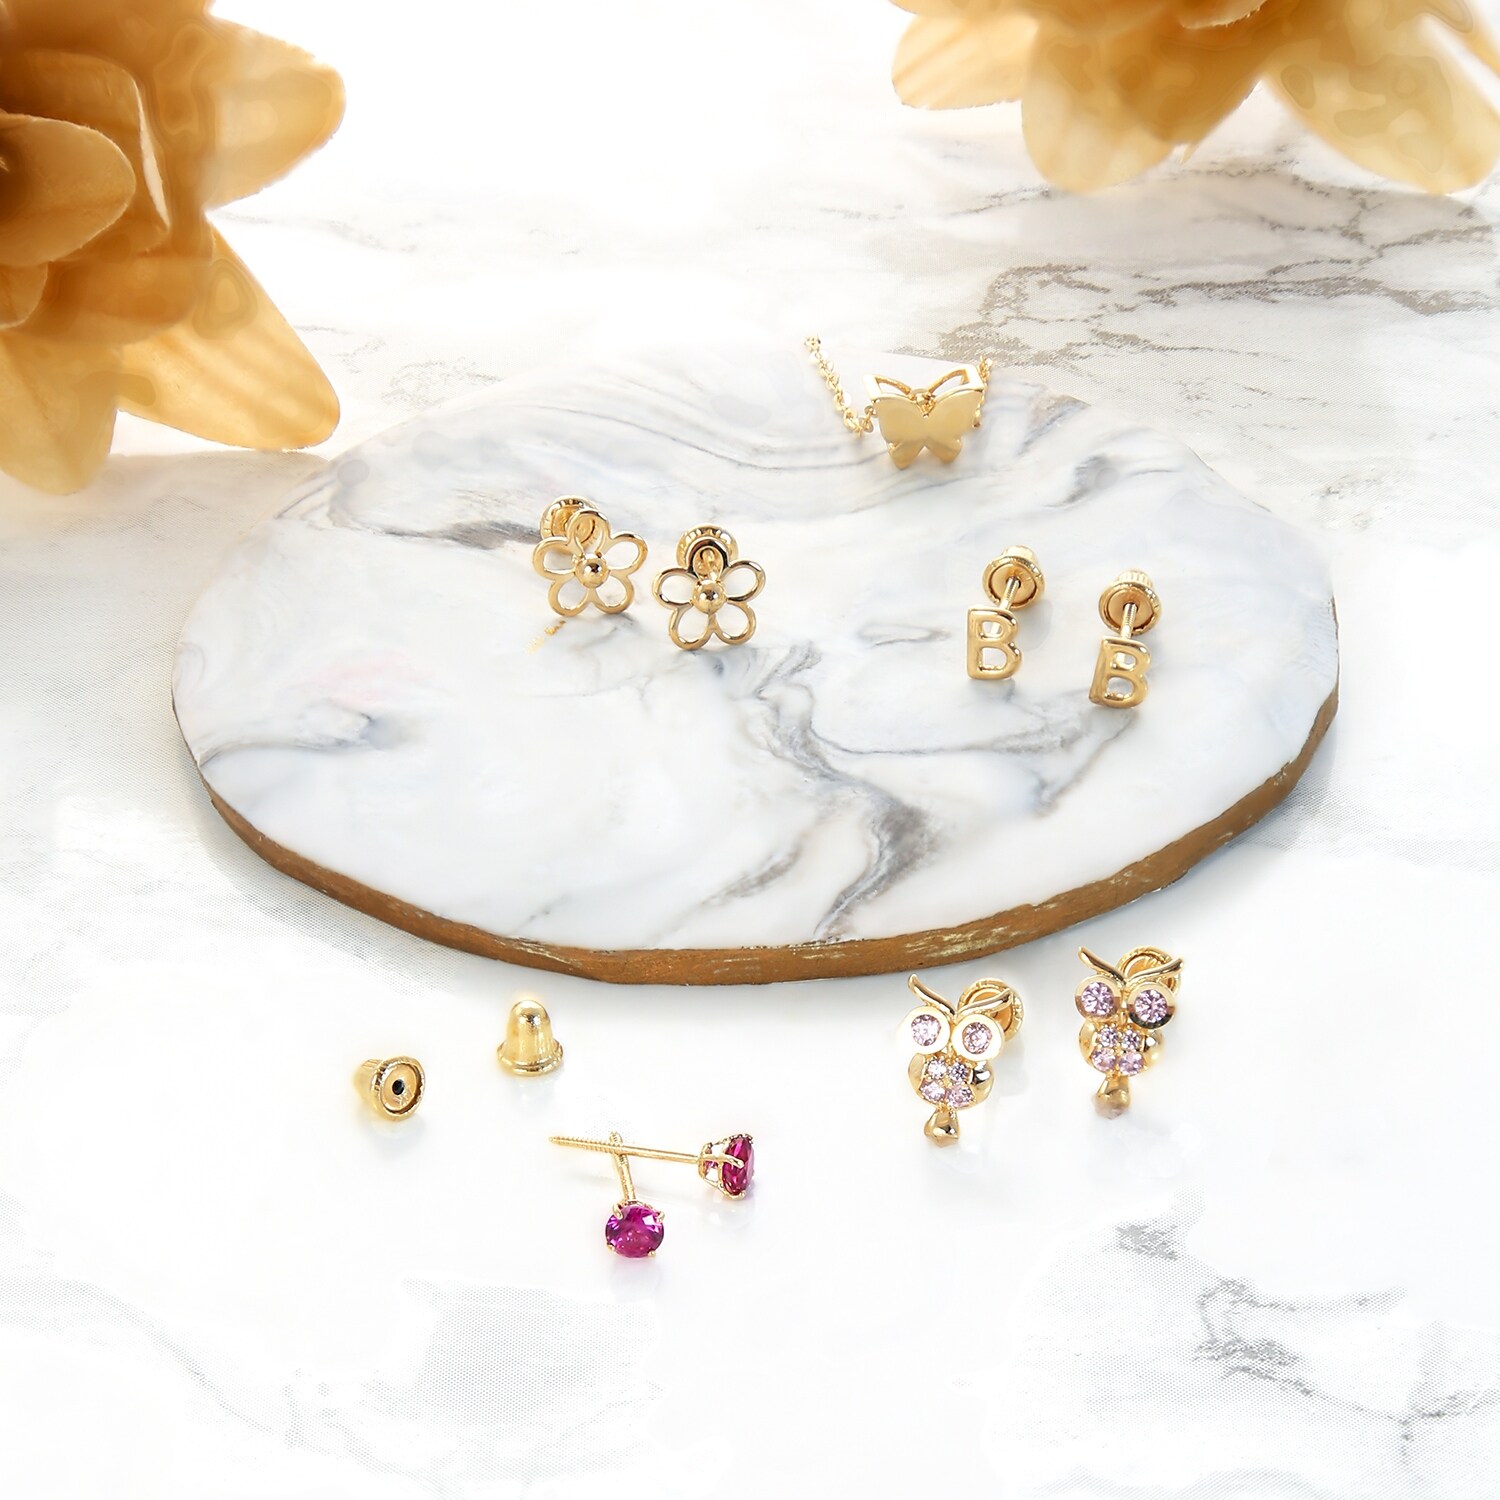 14k Yellow Gold June Lt Purple CZ Small Flower Screw Back Earrings Measures 4x4mm Jewelry Gifts for Women 